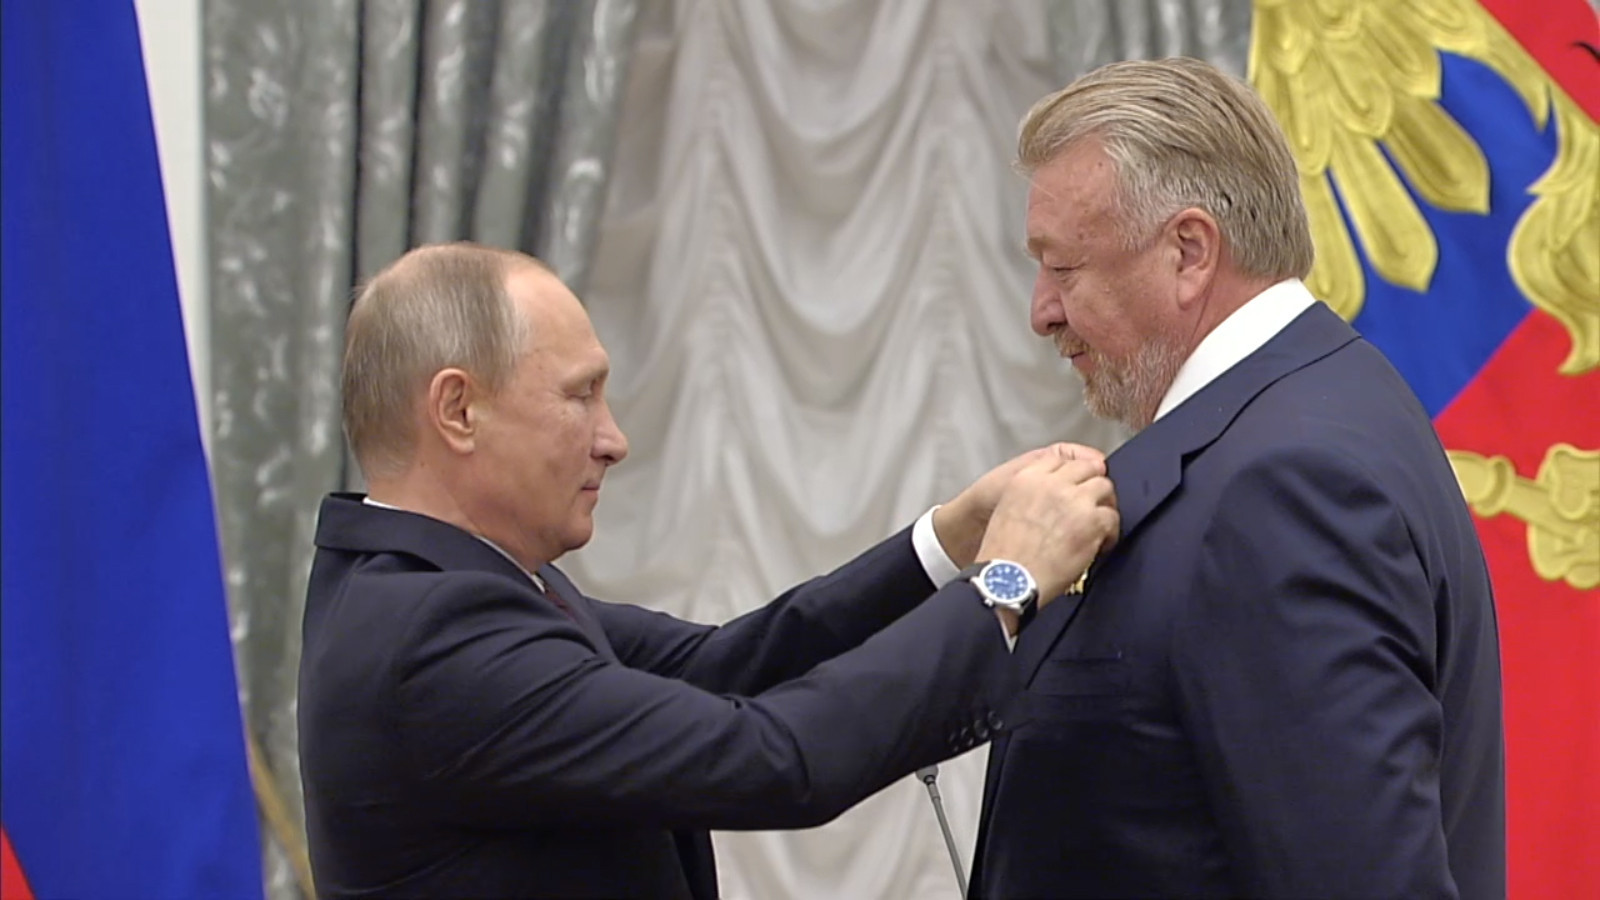 Vasily Titov awarded Order of Friendship by President Putin